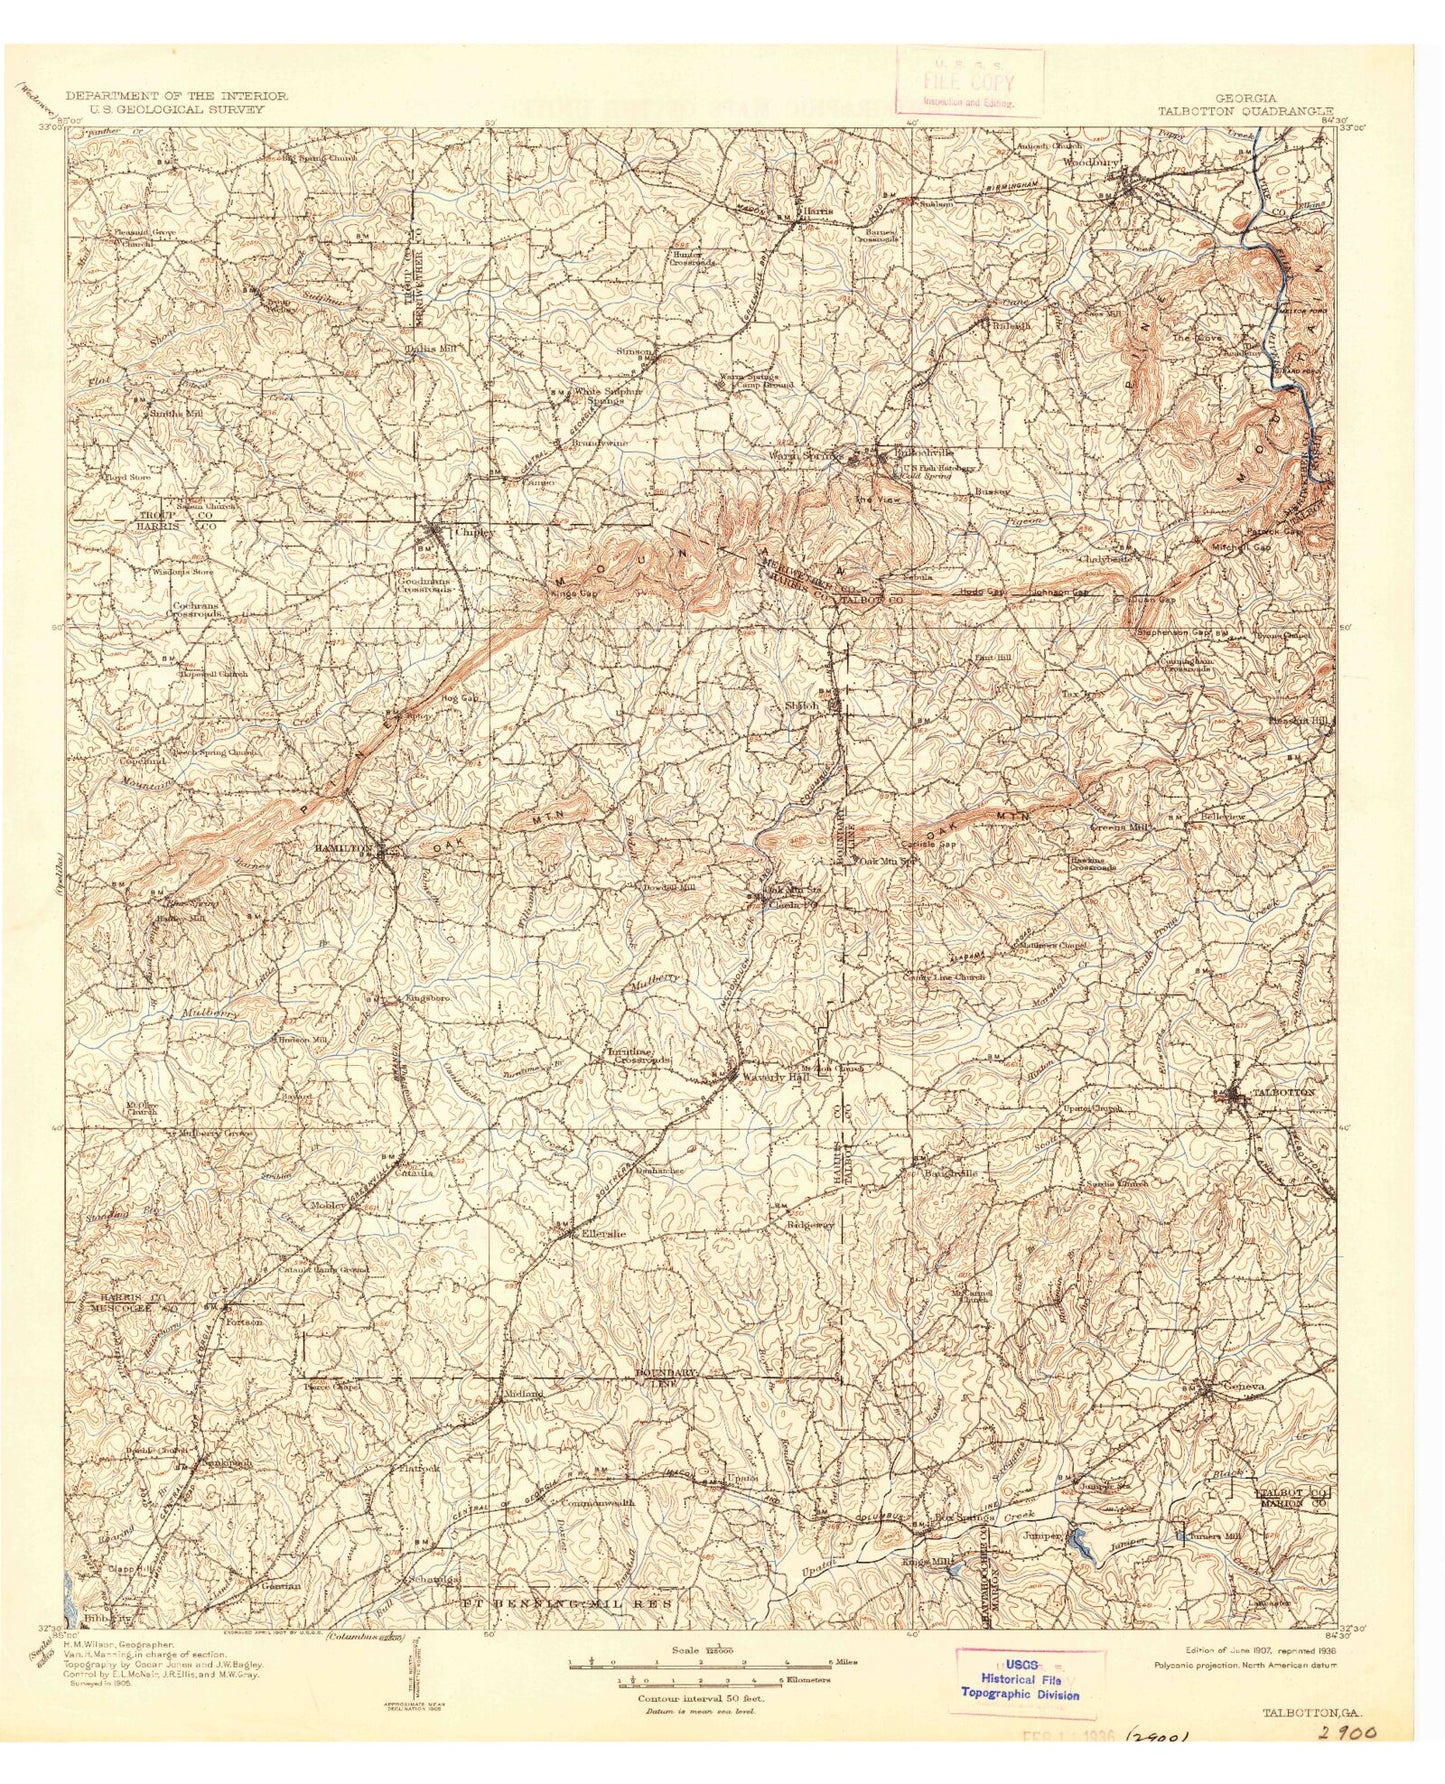 Historic 1907 Talbotton Georgia 30'x30' Topo Map Image